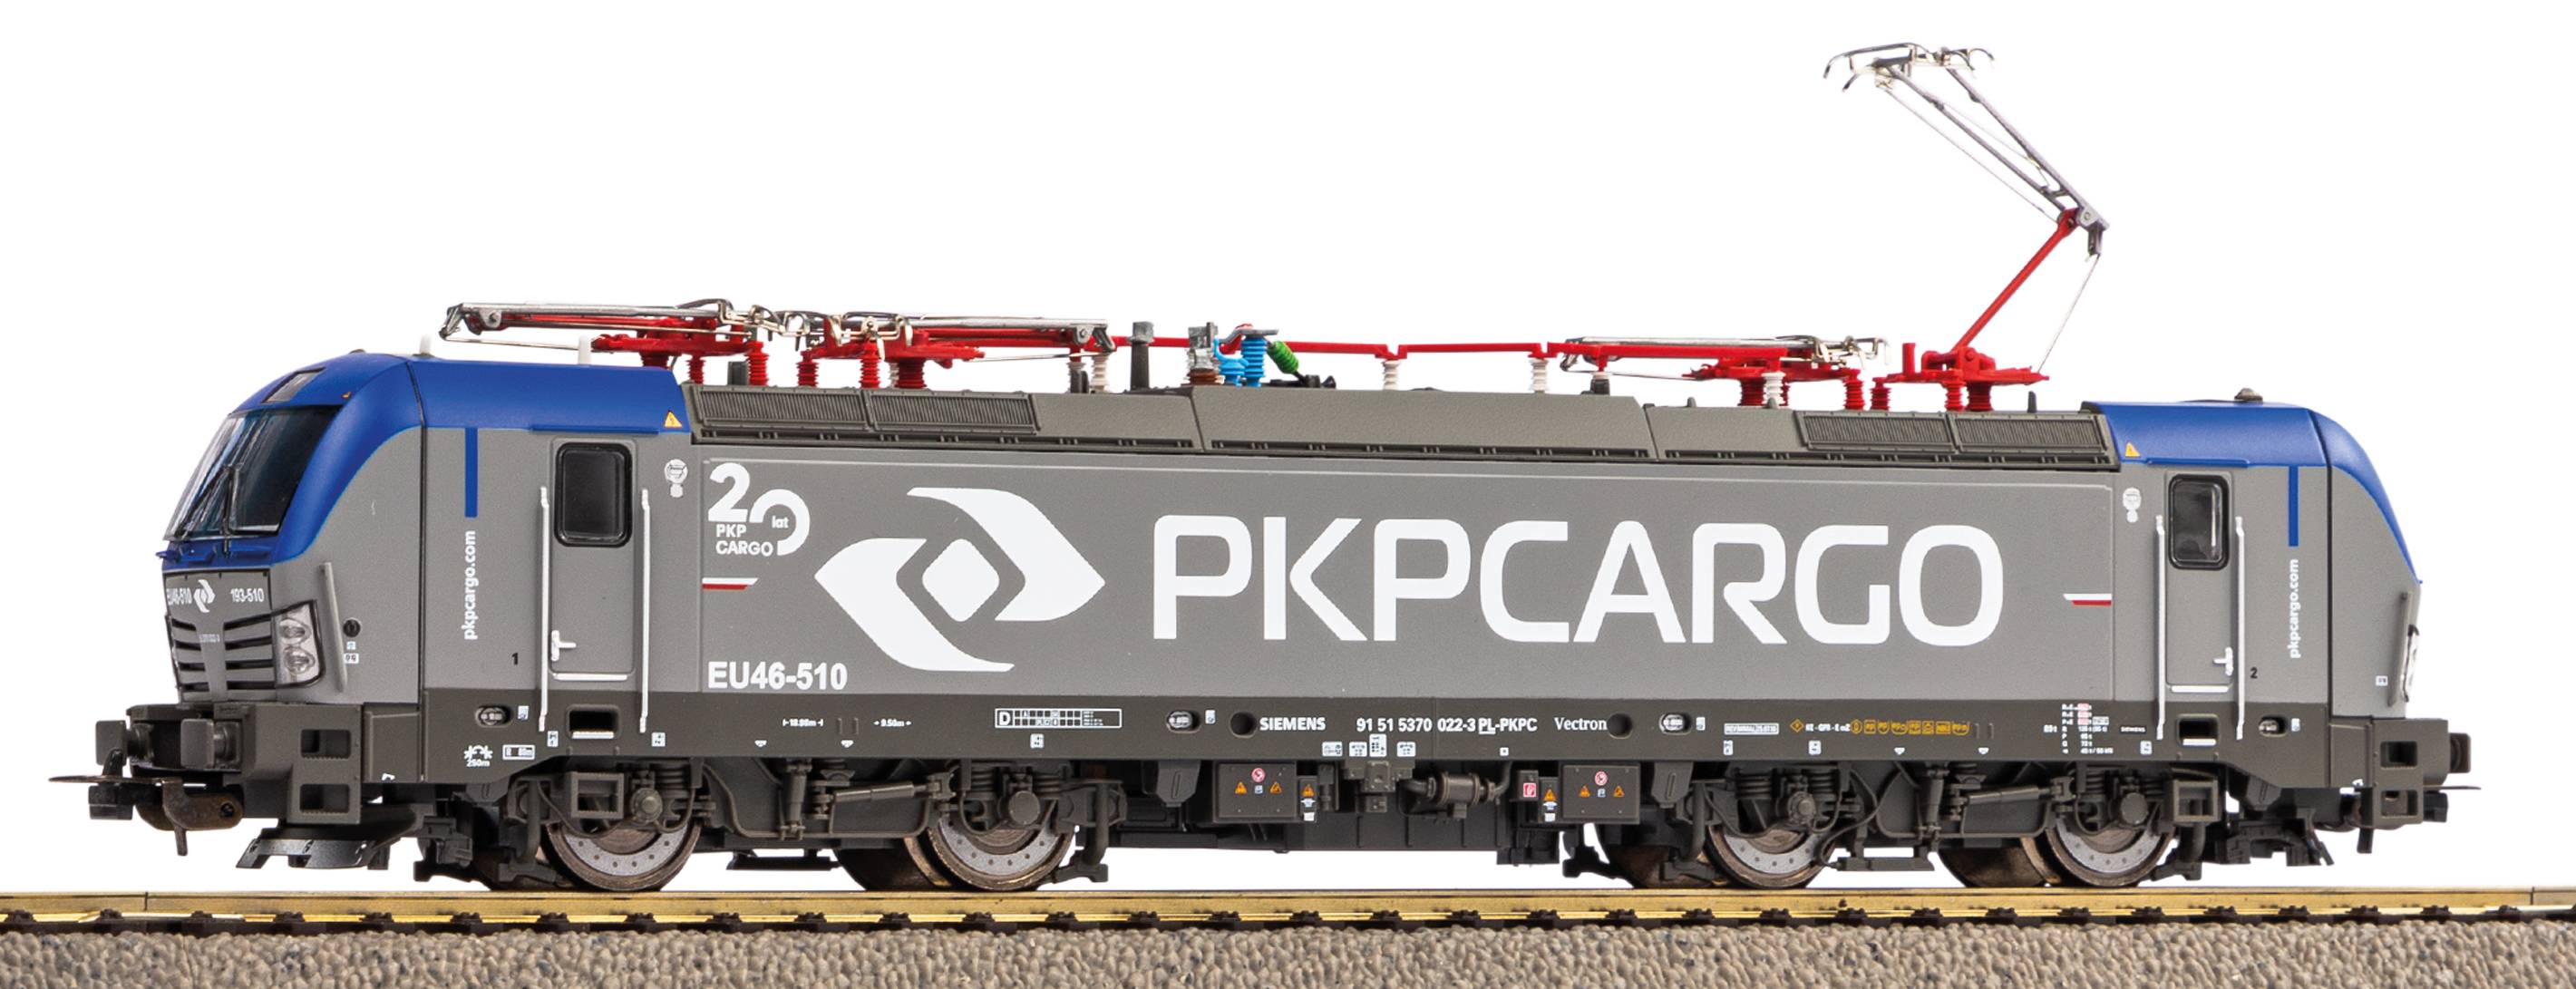 Piko PKP PKP Cargo Elektrowóz Lokomotywa Vectron Piko 59593 EU46